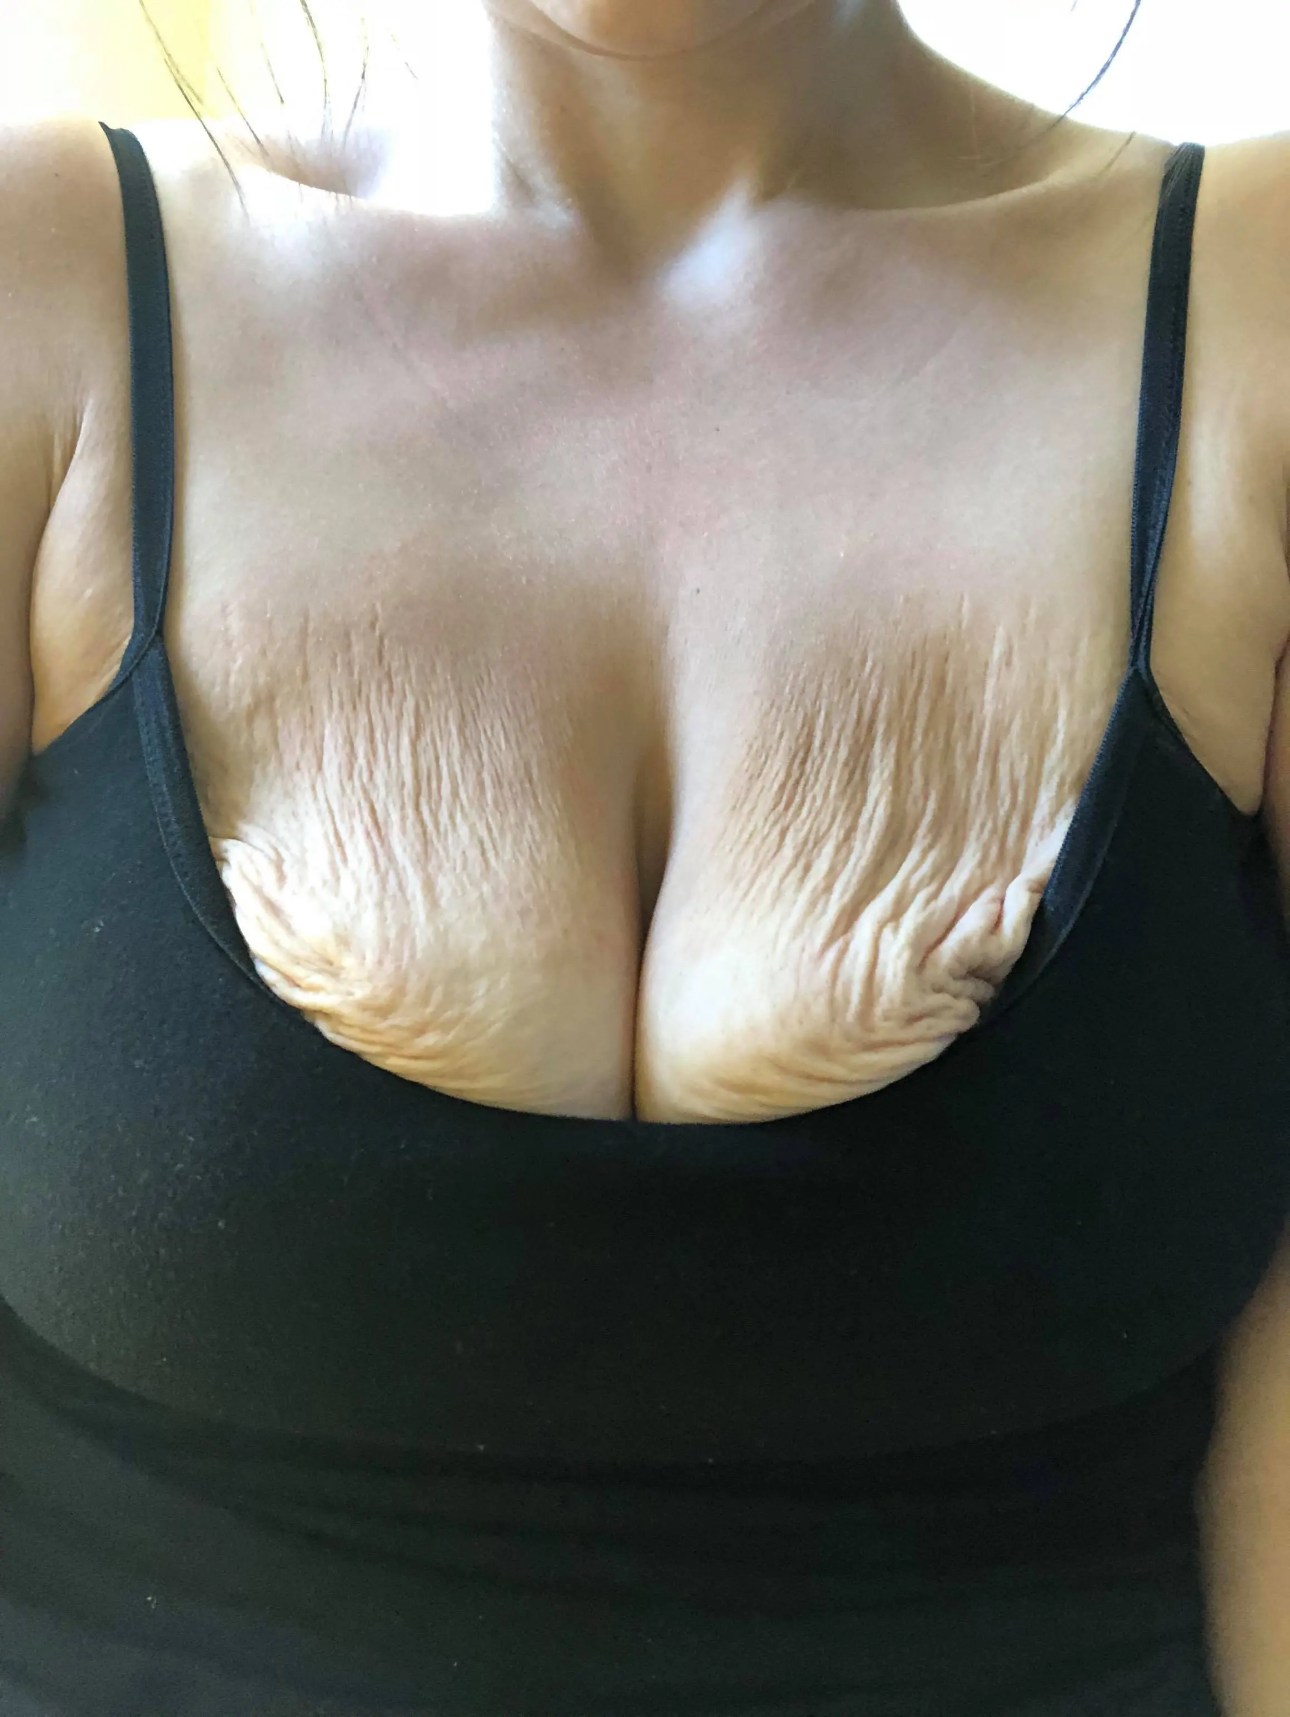 craig el recommends long saggy boobs tumblr pic